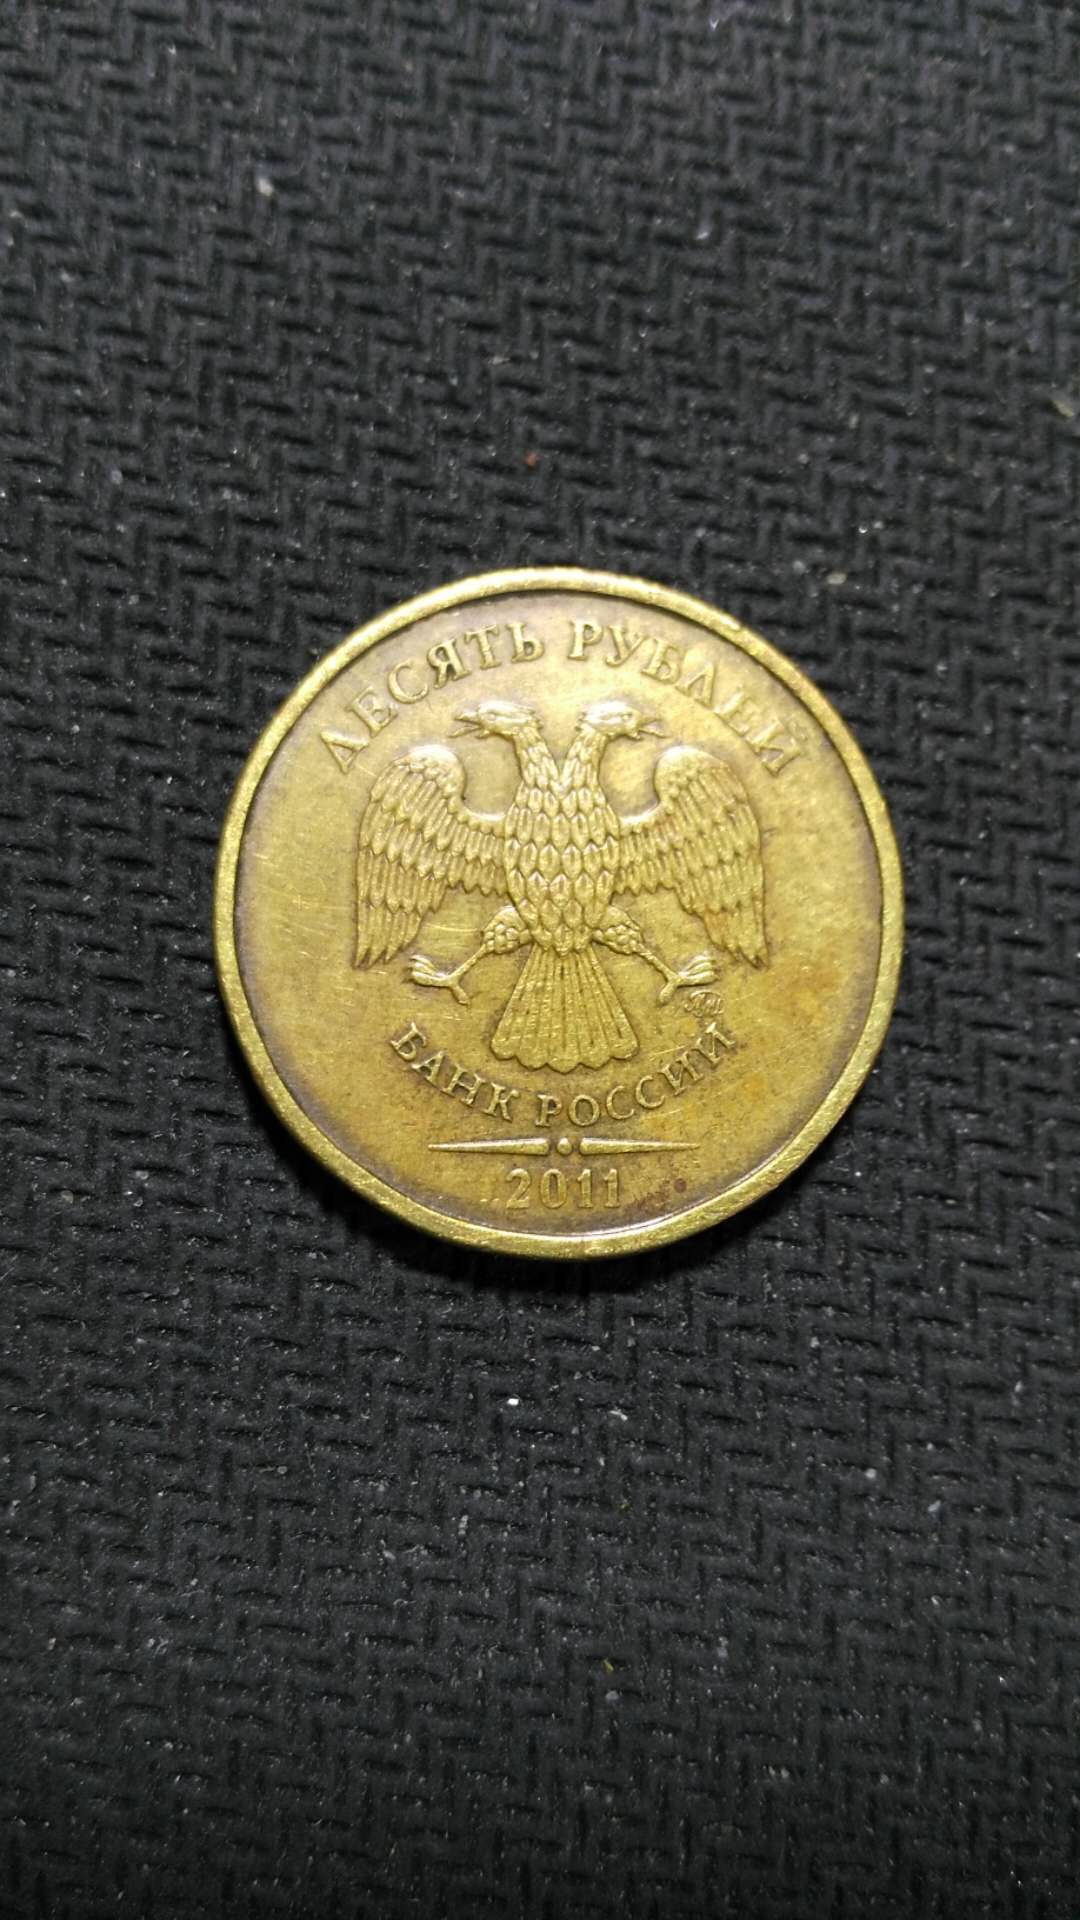 双头鹰硬币10元价值图片